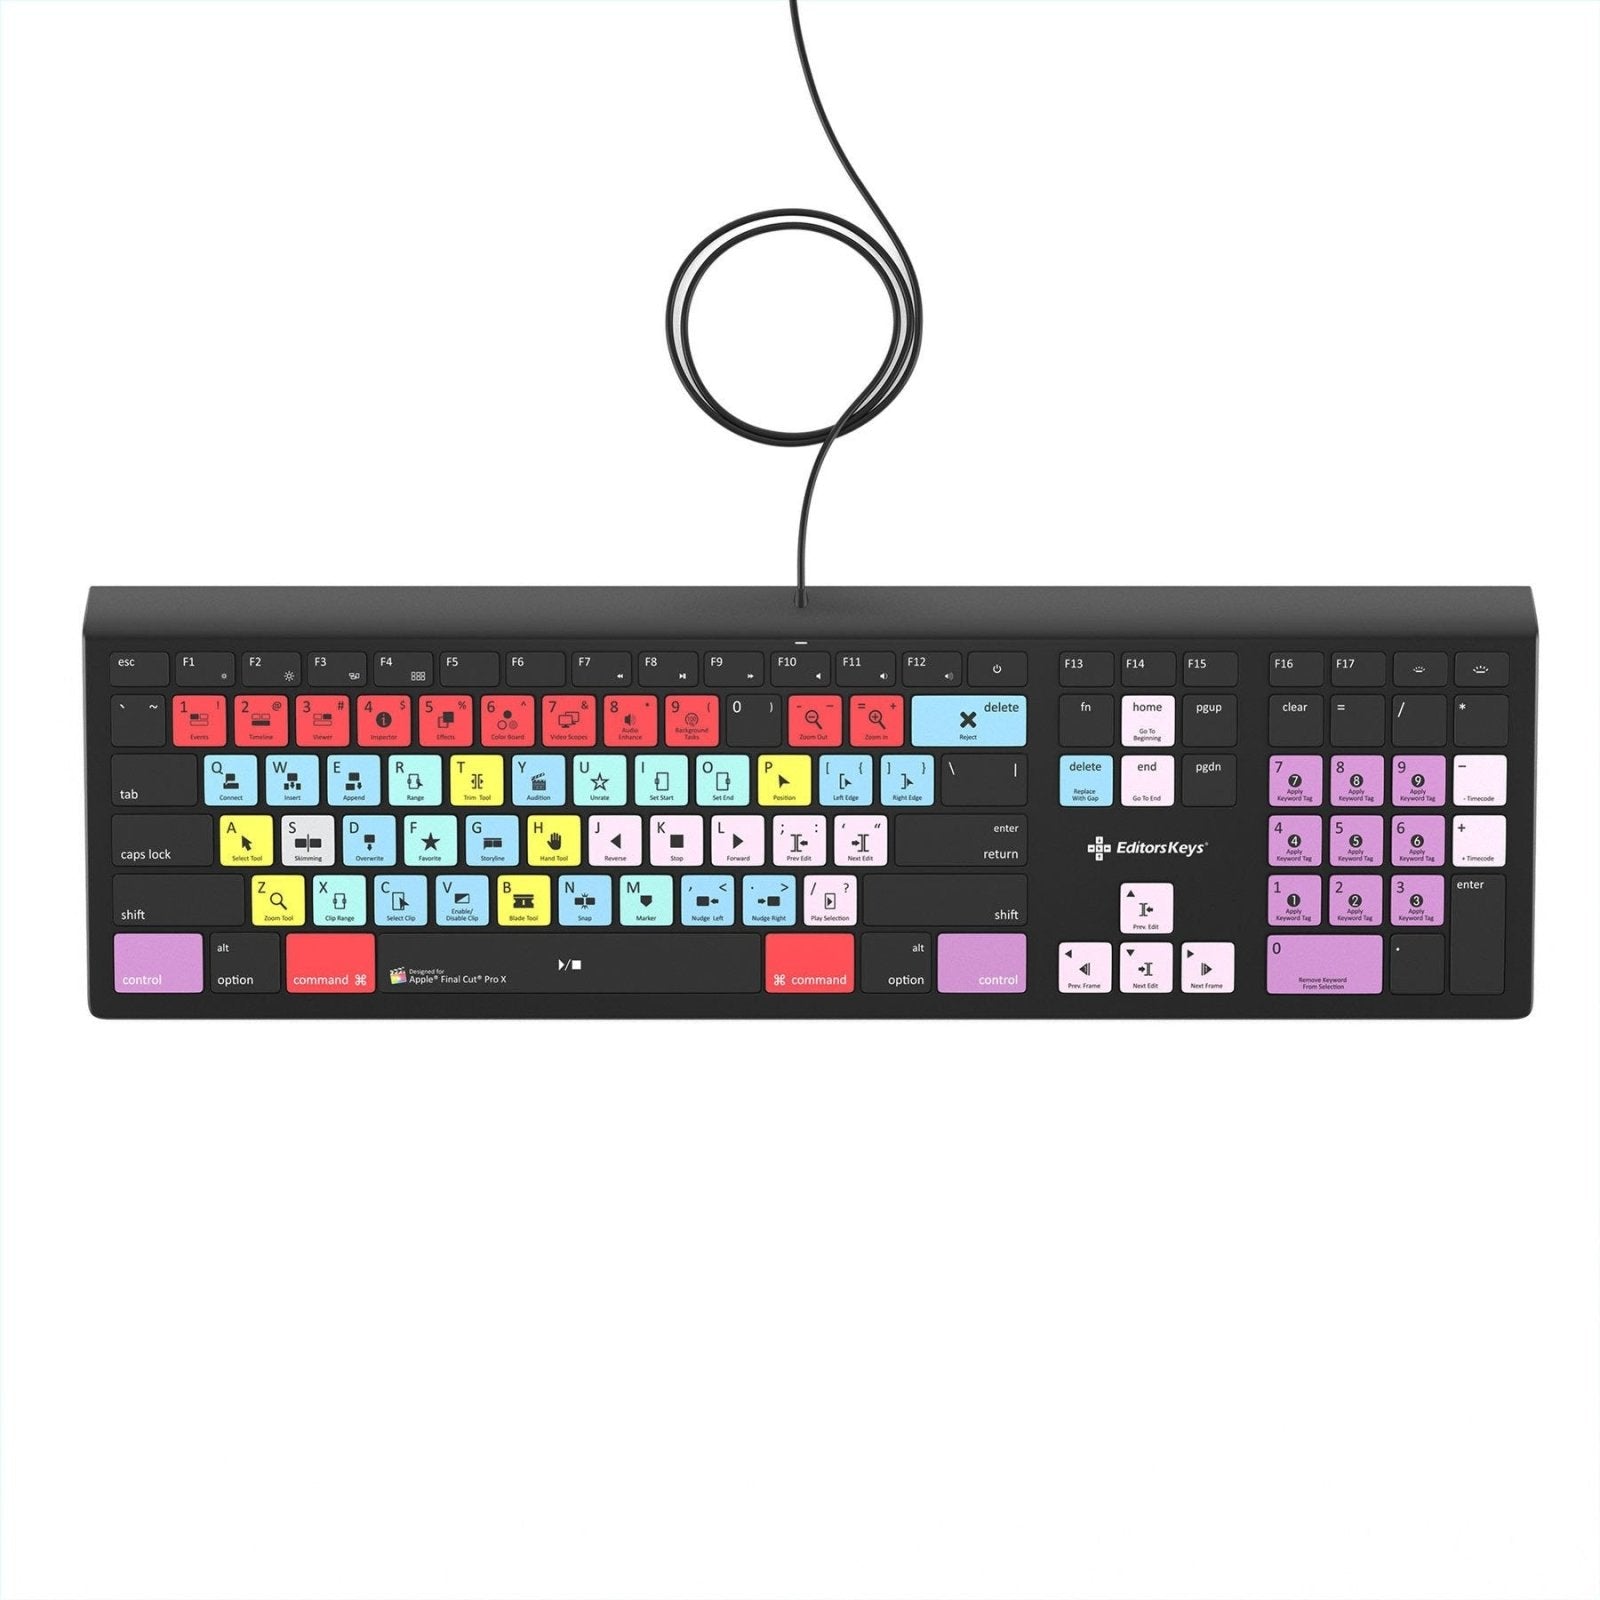 Final Cut Pro X Keyboard - Backlit Mac - Editors Keys